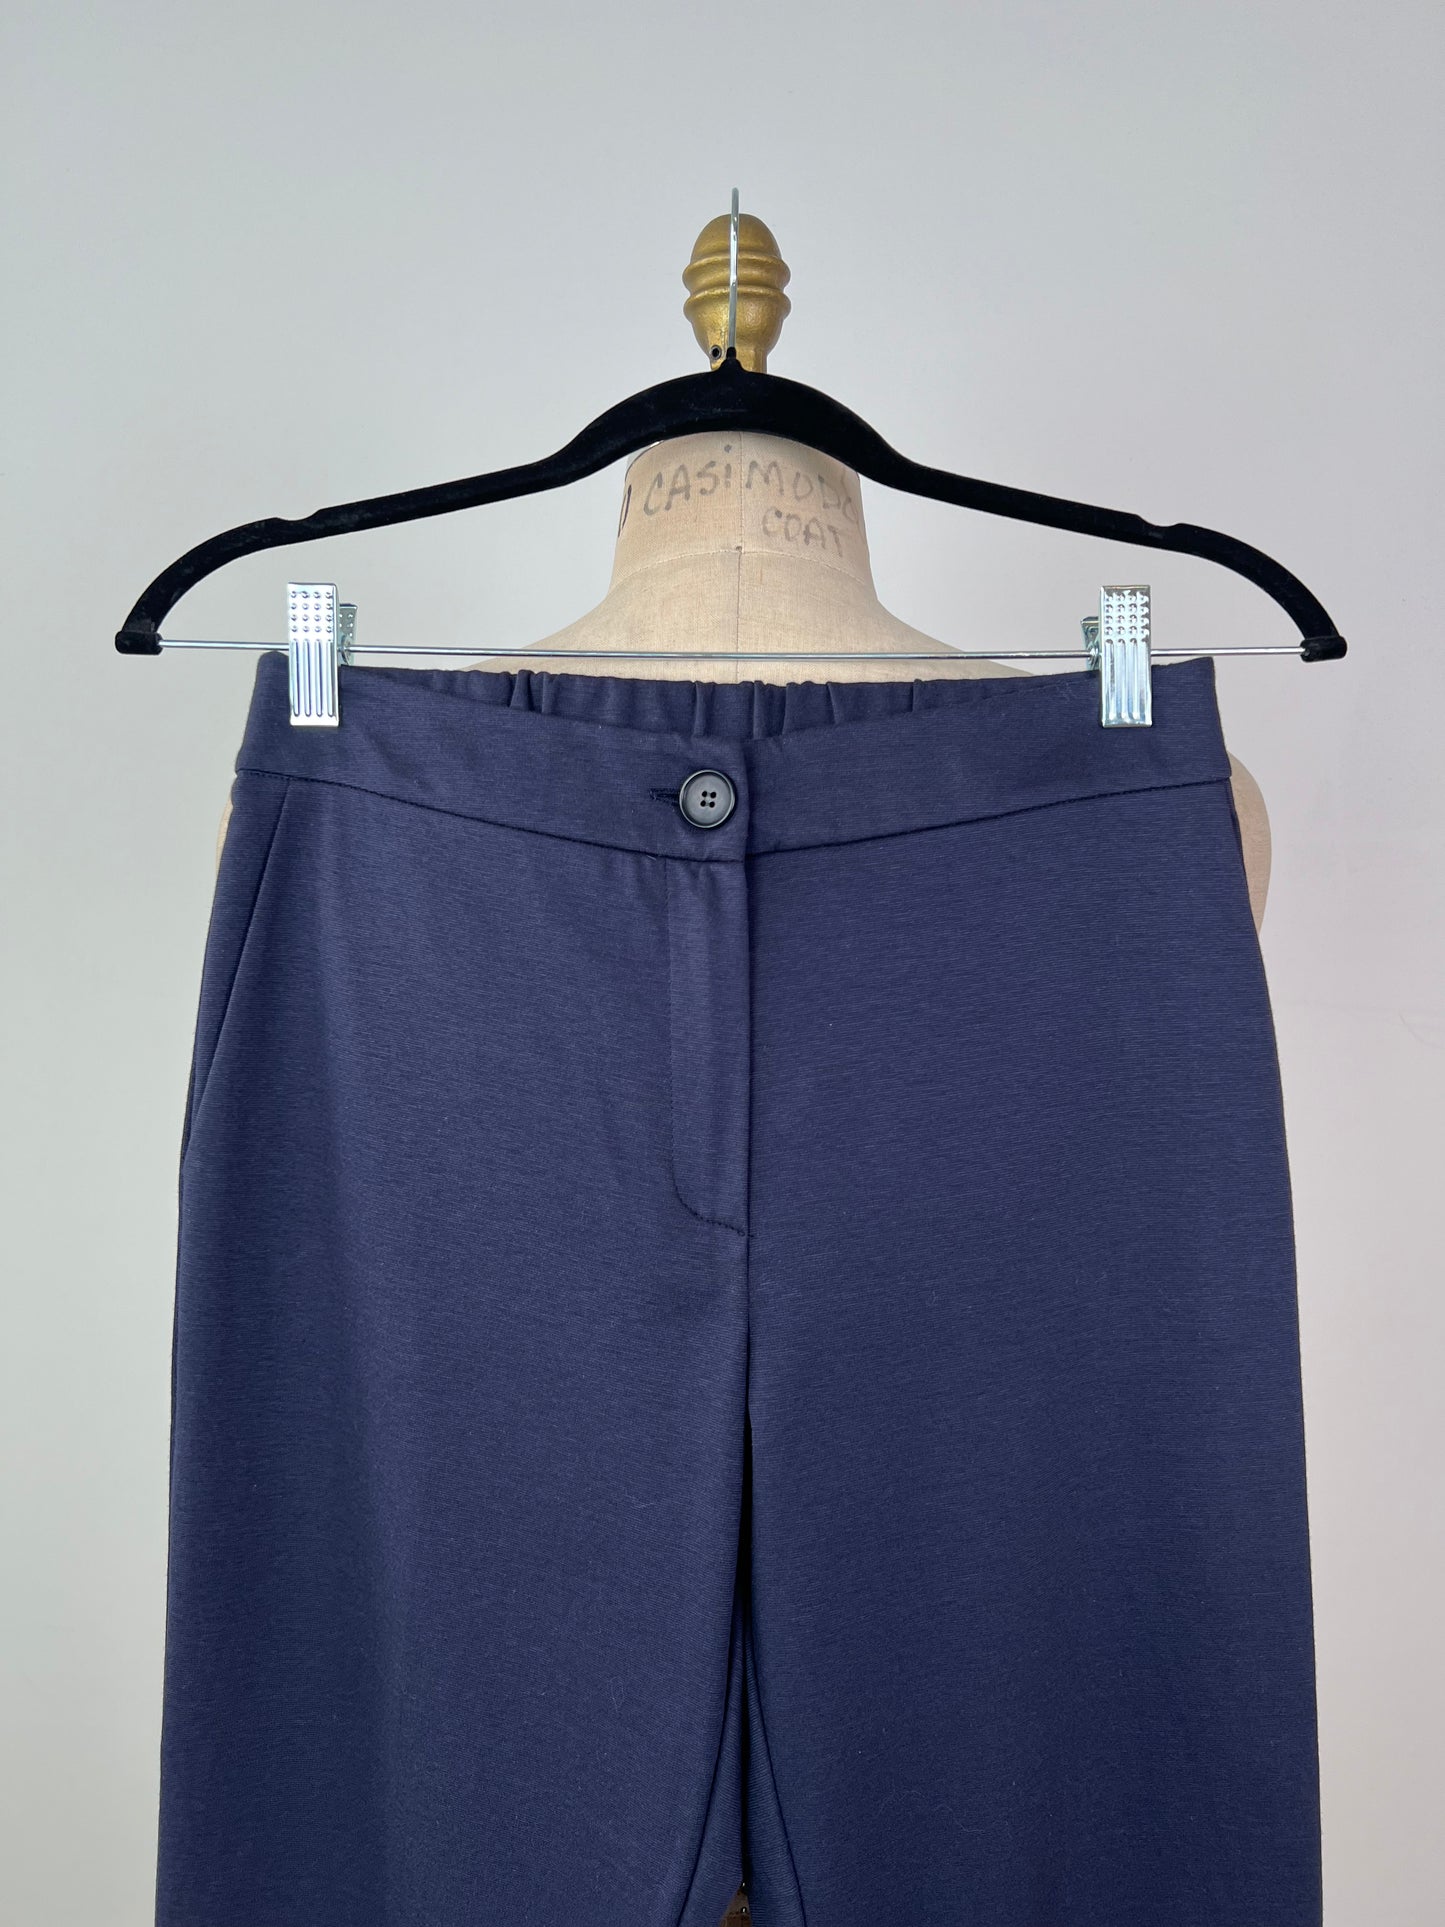 Pantalon écourté en tricot marine doux (XS)